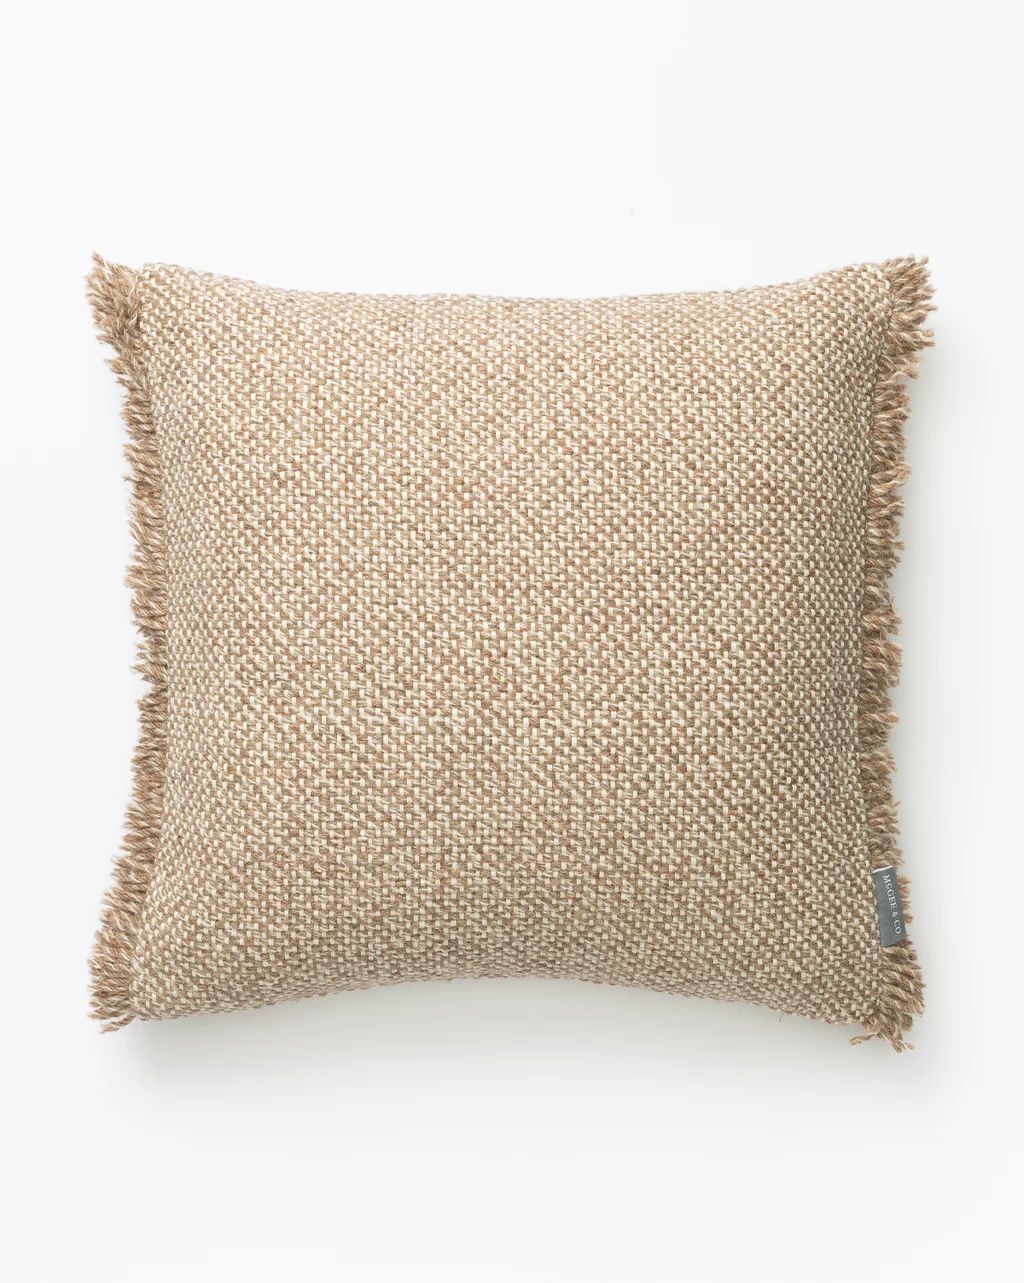 Tillerson Woven Pillow Cover | McGee & Co.